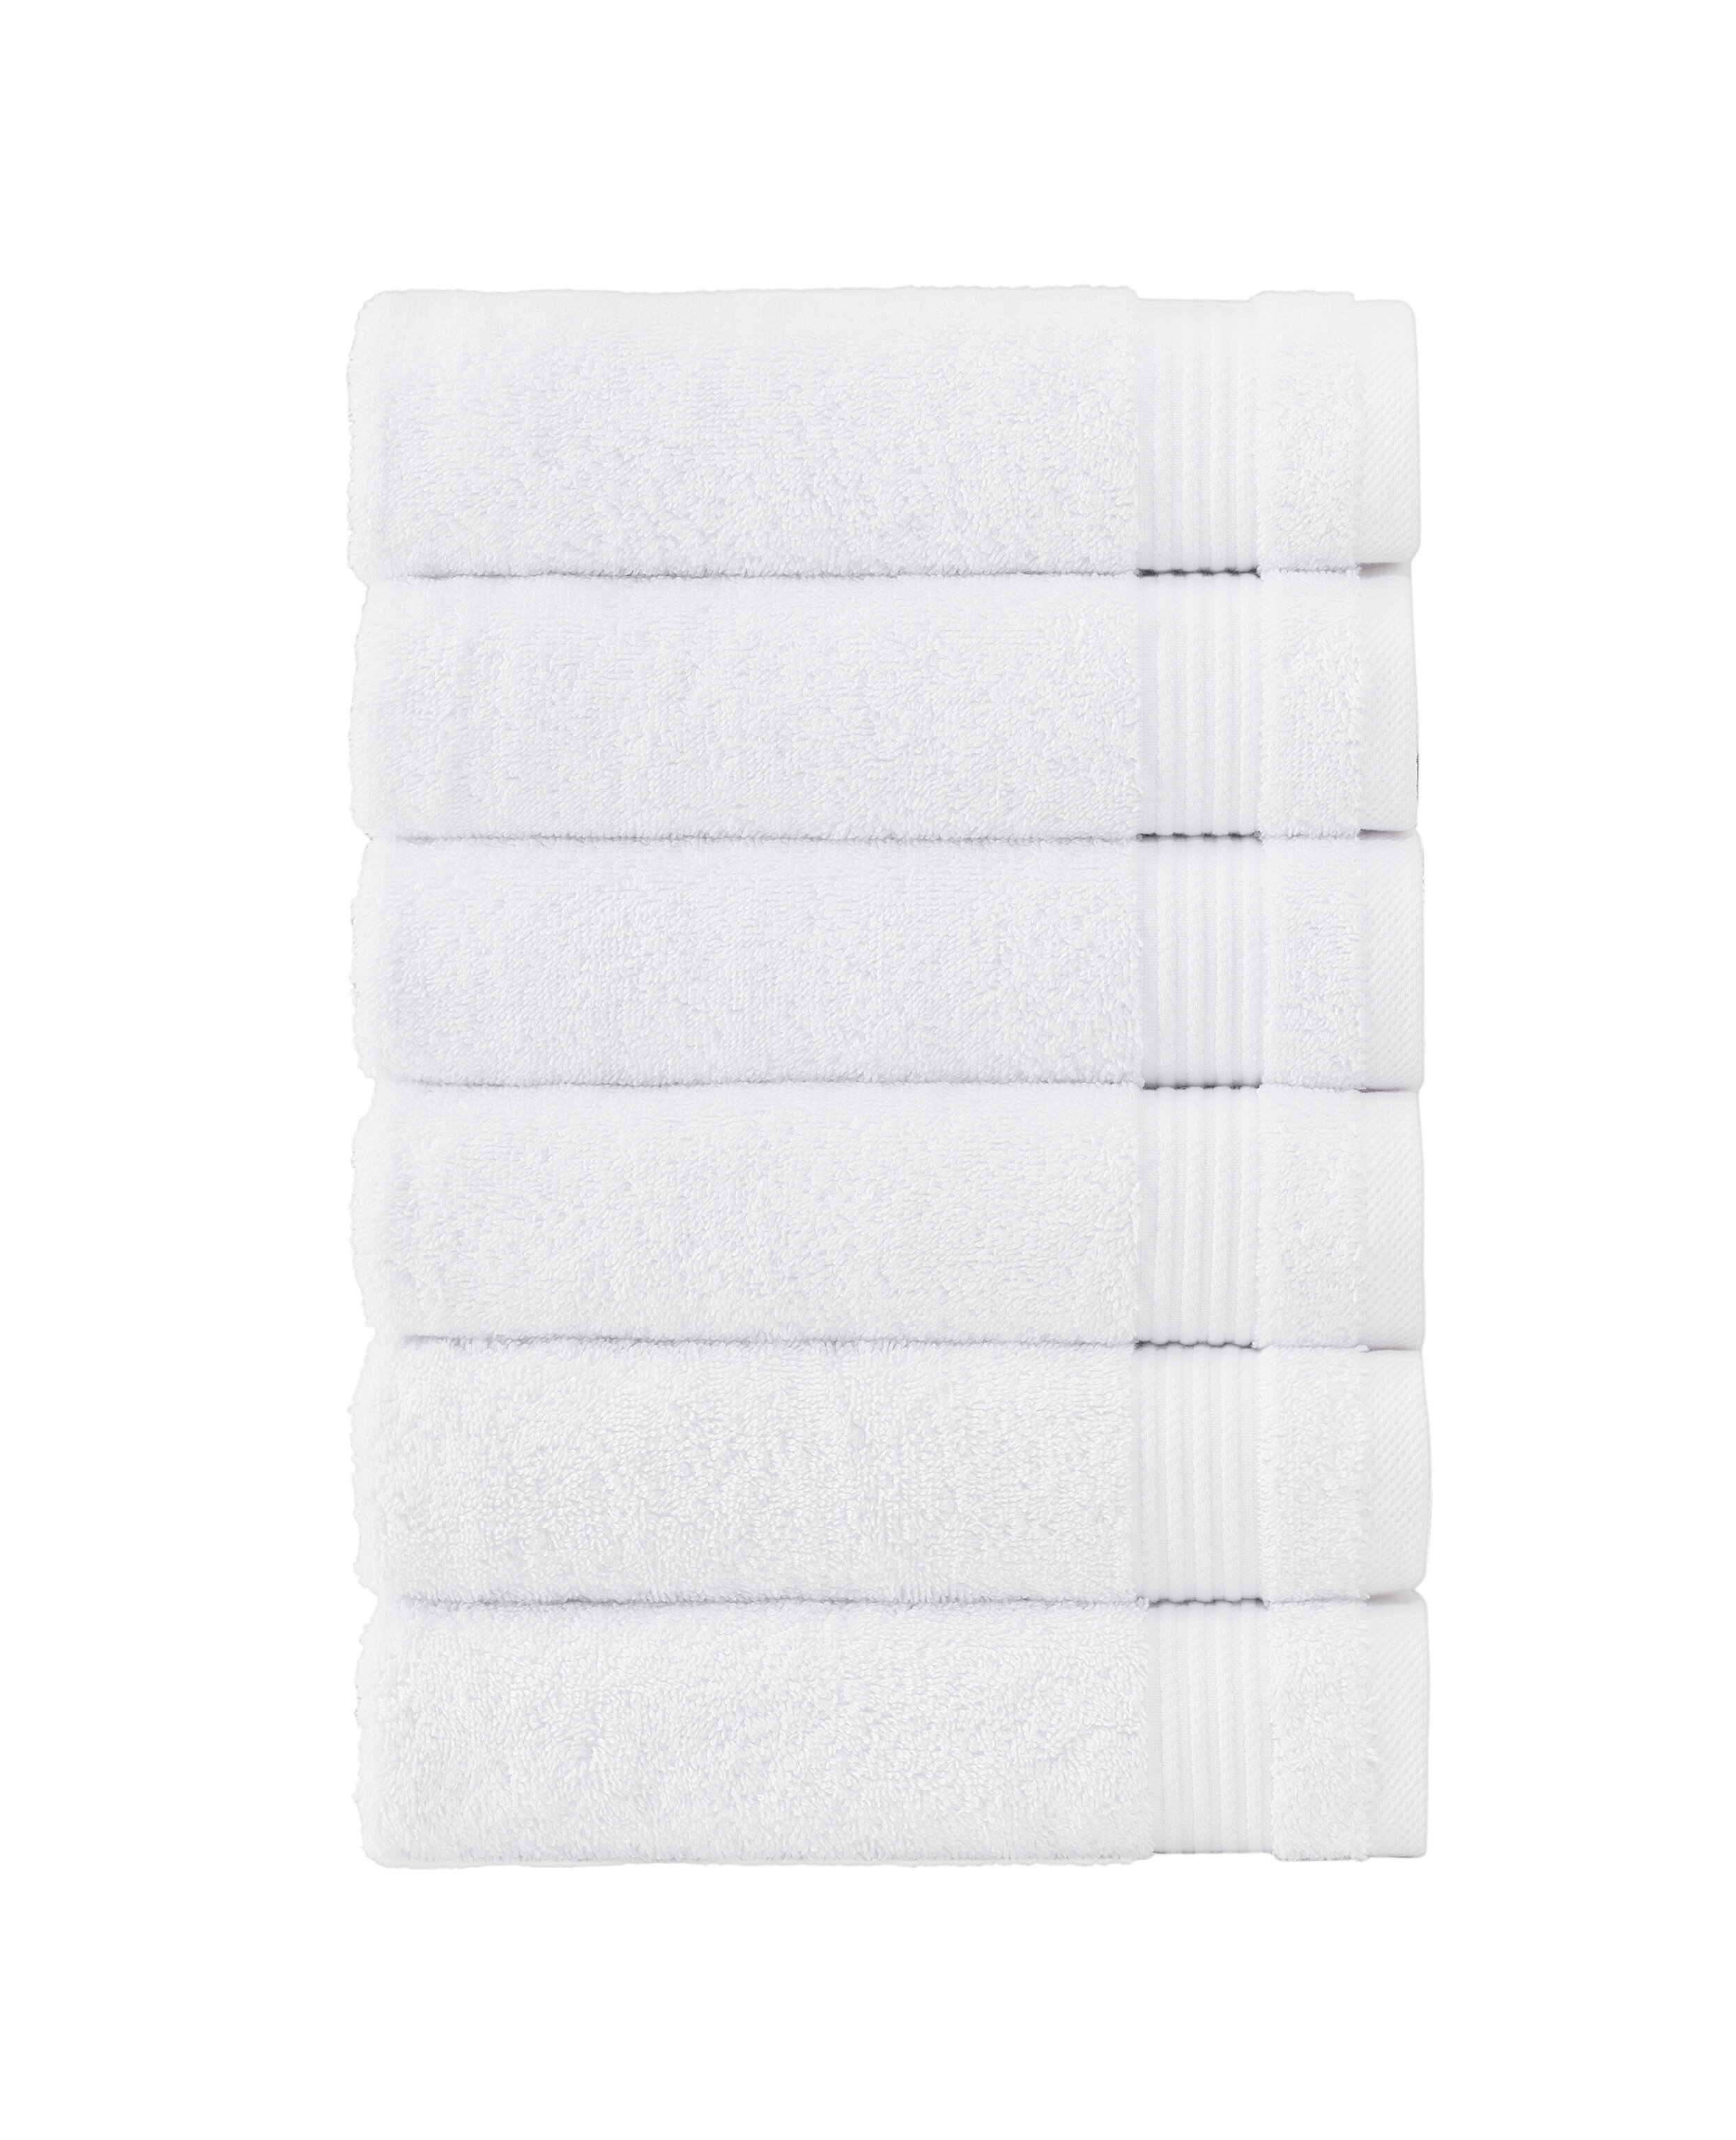 https://assets.wfcdn.com/im/26421380/compr-r85/3045/30456071/shannan-6-piece-turkish-cotton-hand-towel-set.jpg